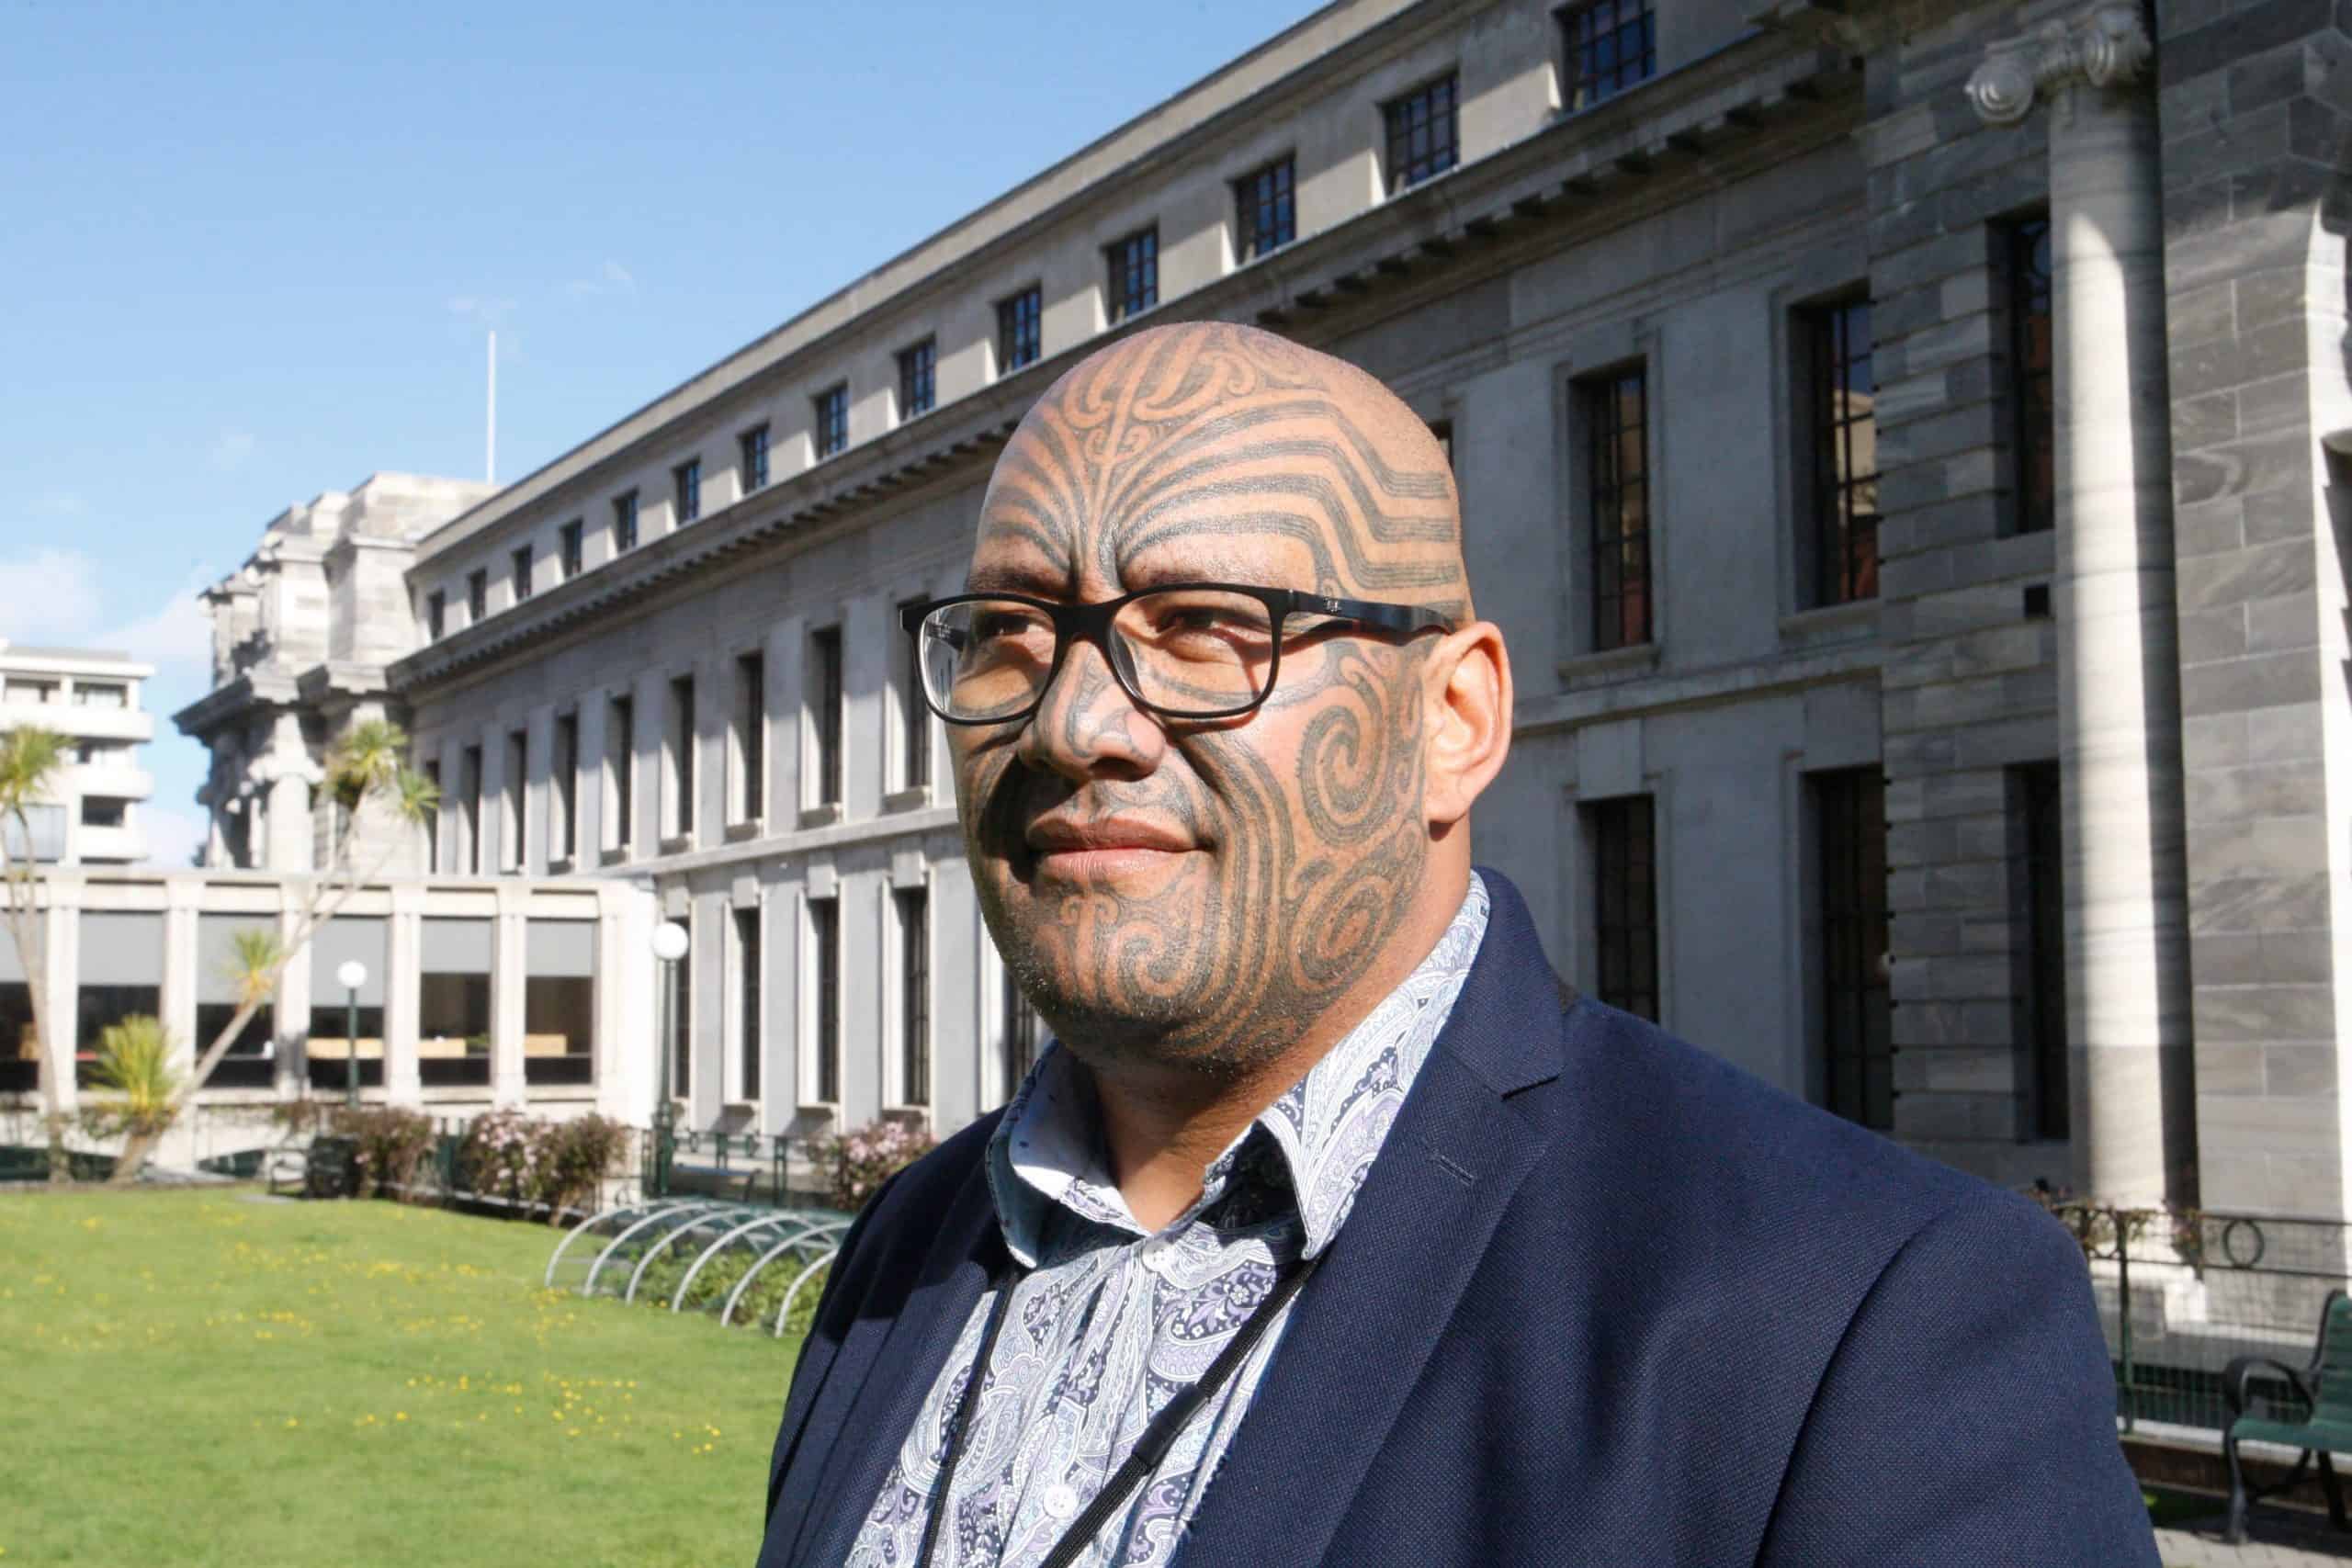 ‘Being Maori is a superpower’: Indigenous lawmaker wins tie battle